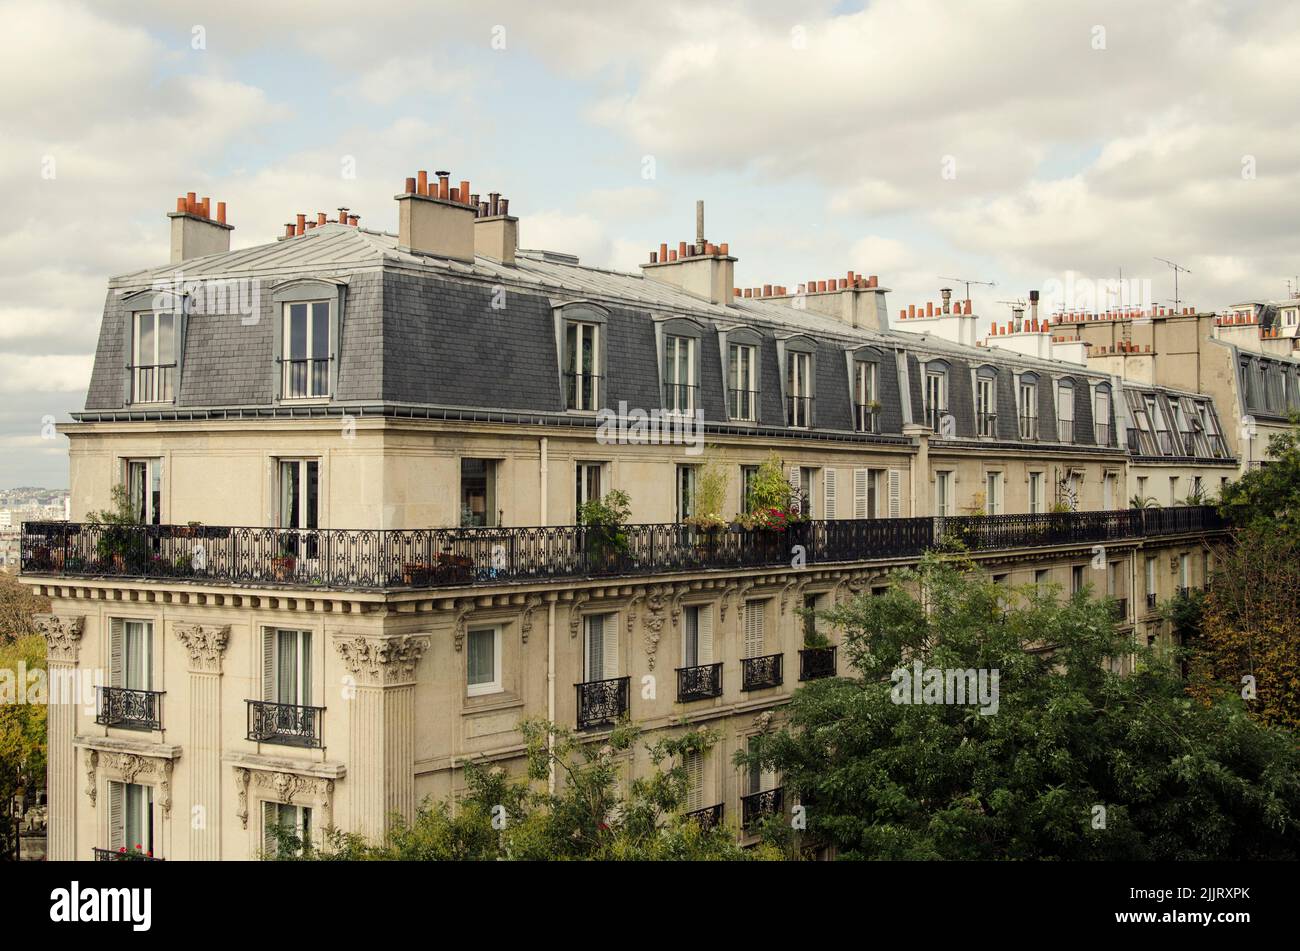 Eine malerische Aussicht auf schöne alte Gebäude von Paris, Frankreich gegen einen bewölkten Himmel Stockfoto